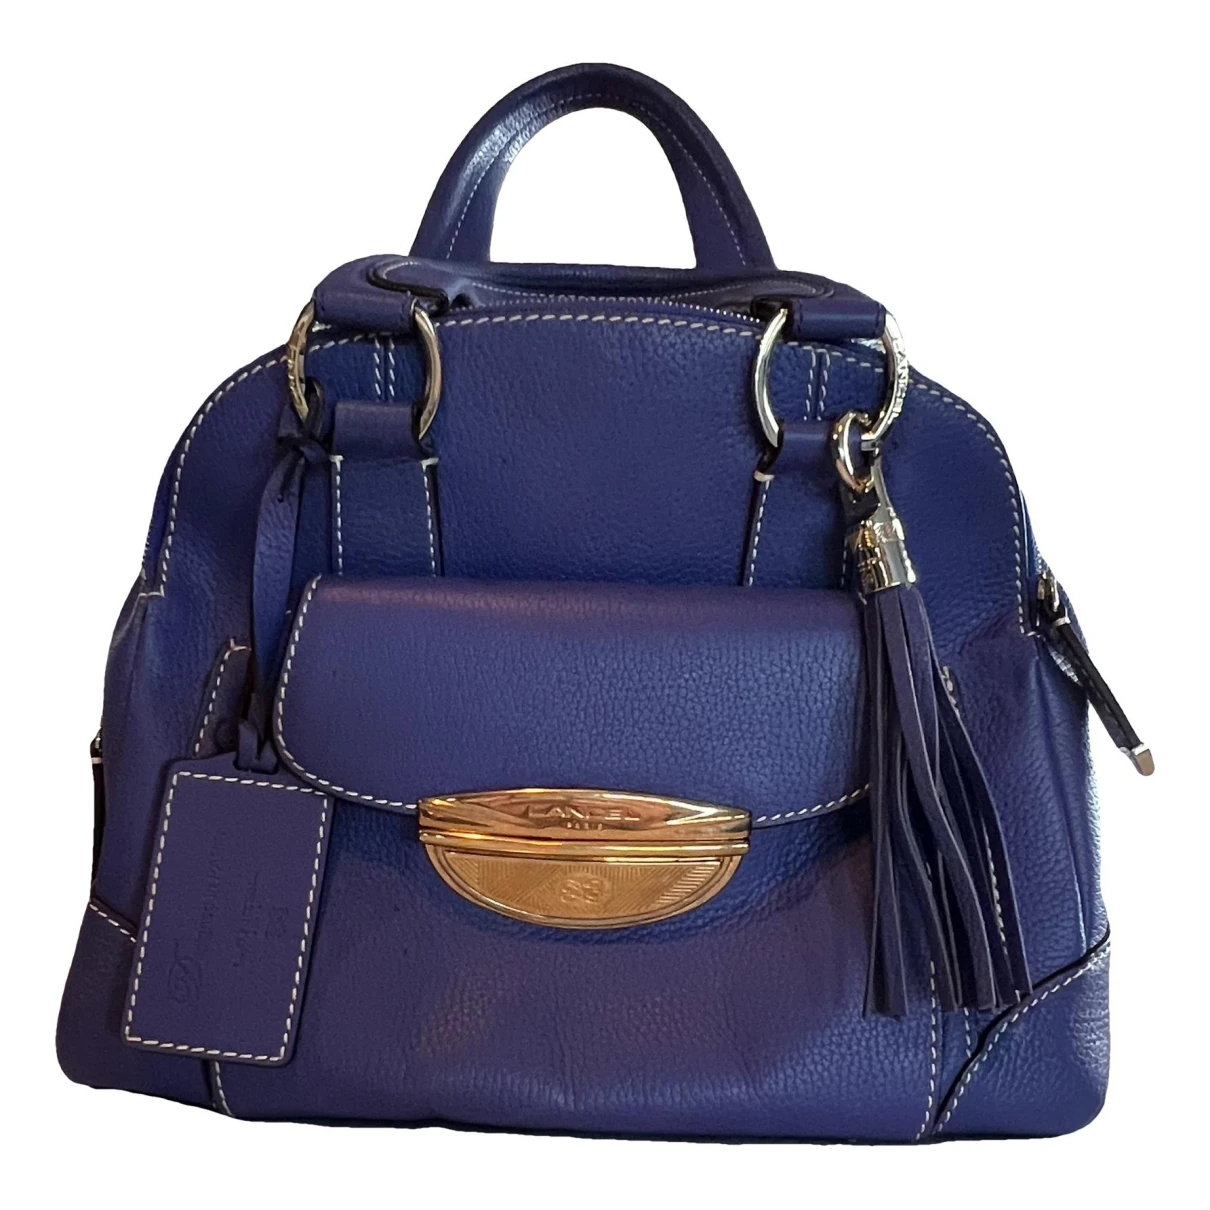 Pre-owned Lancel Adjani Leather Handbag In Blue